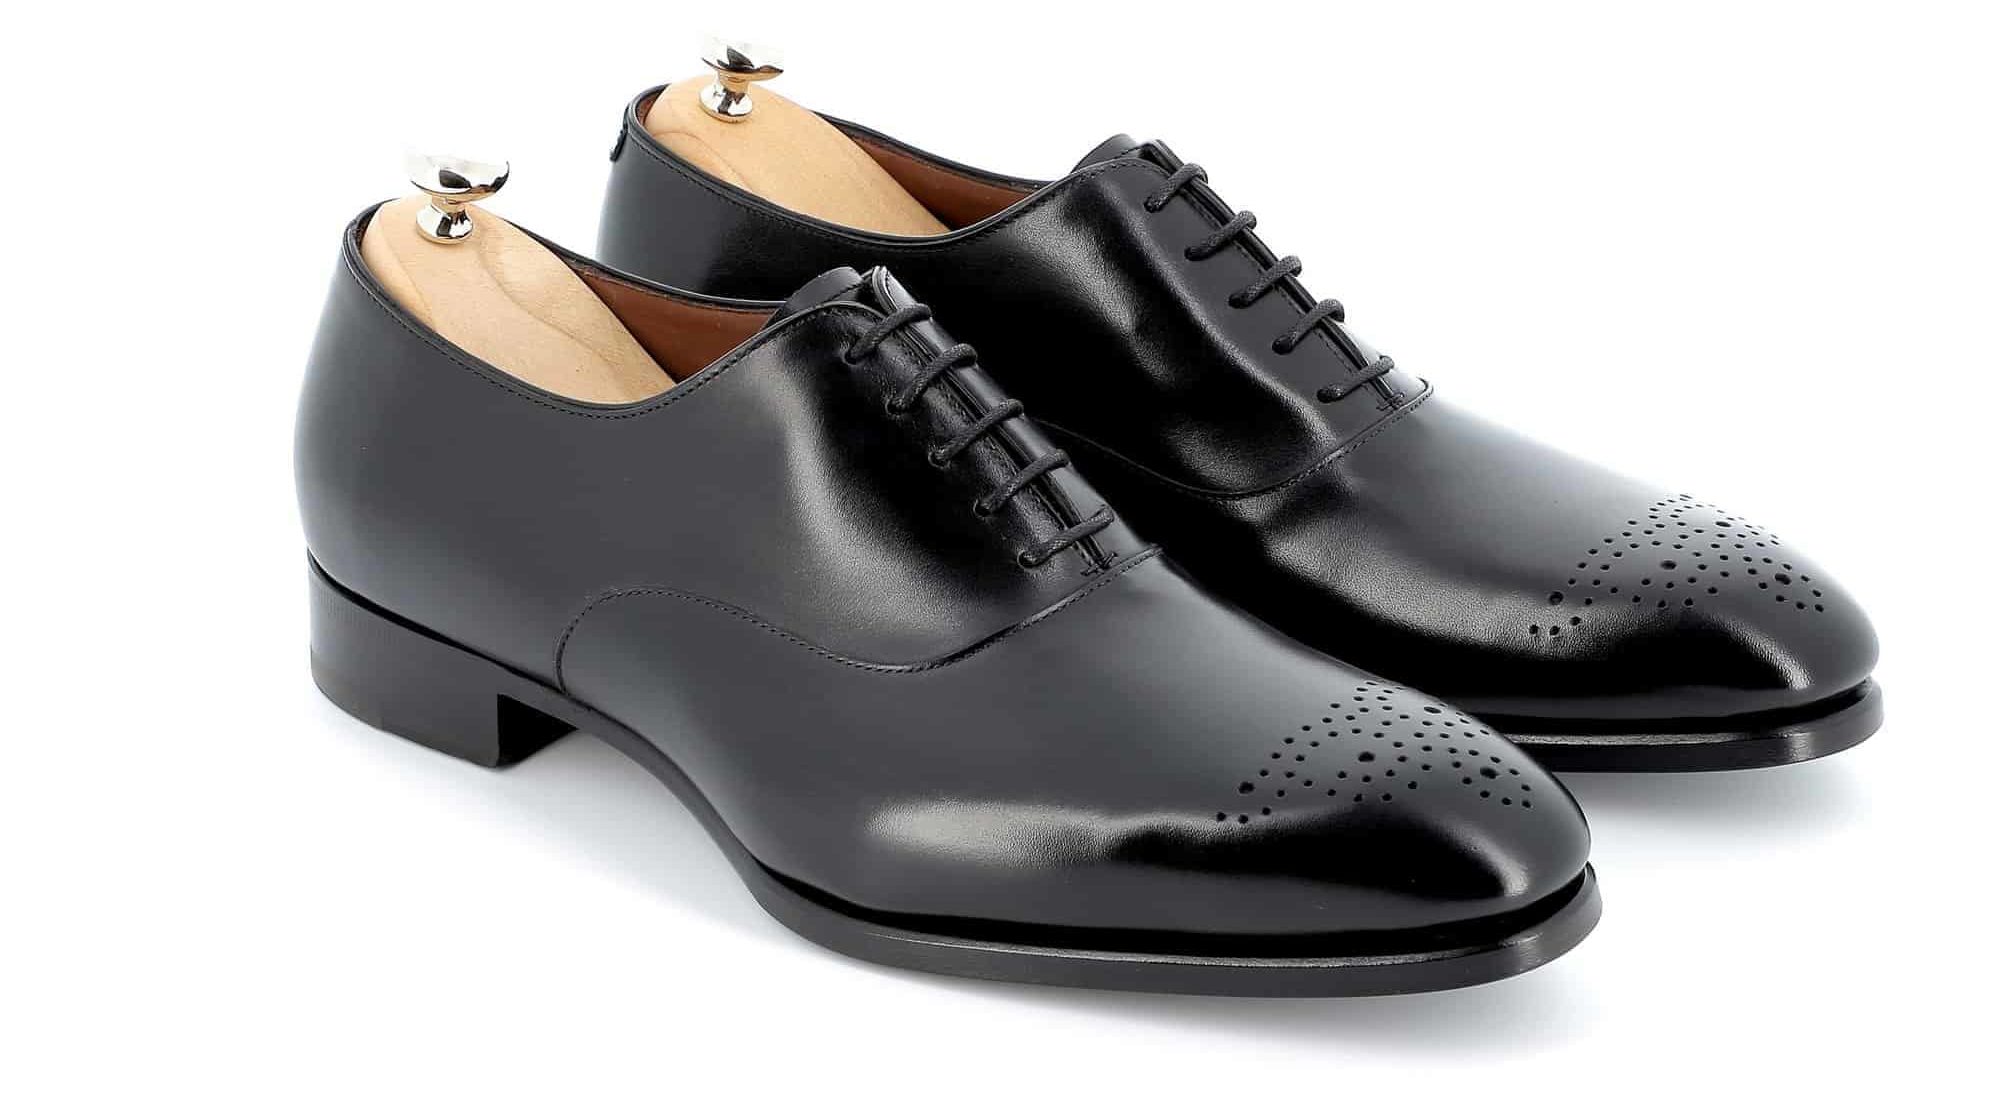 Chaussures Richelieu Warren cuir noir semelles cuir